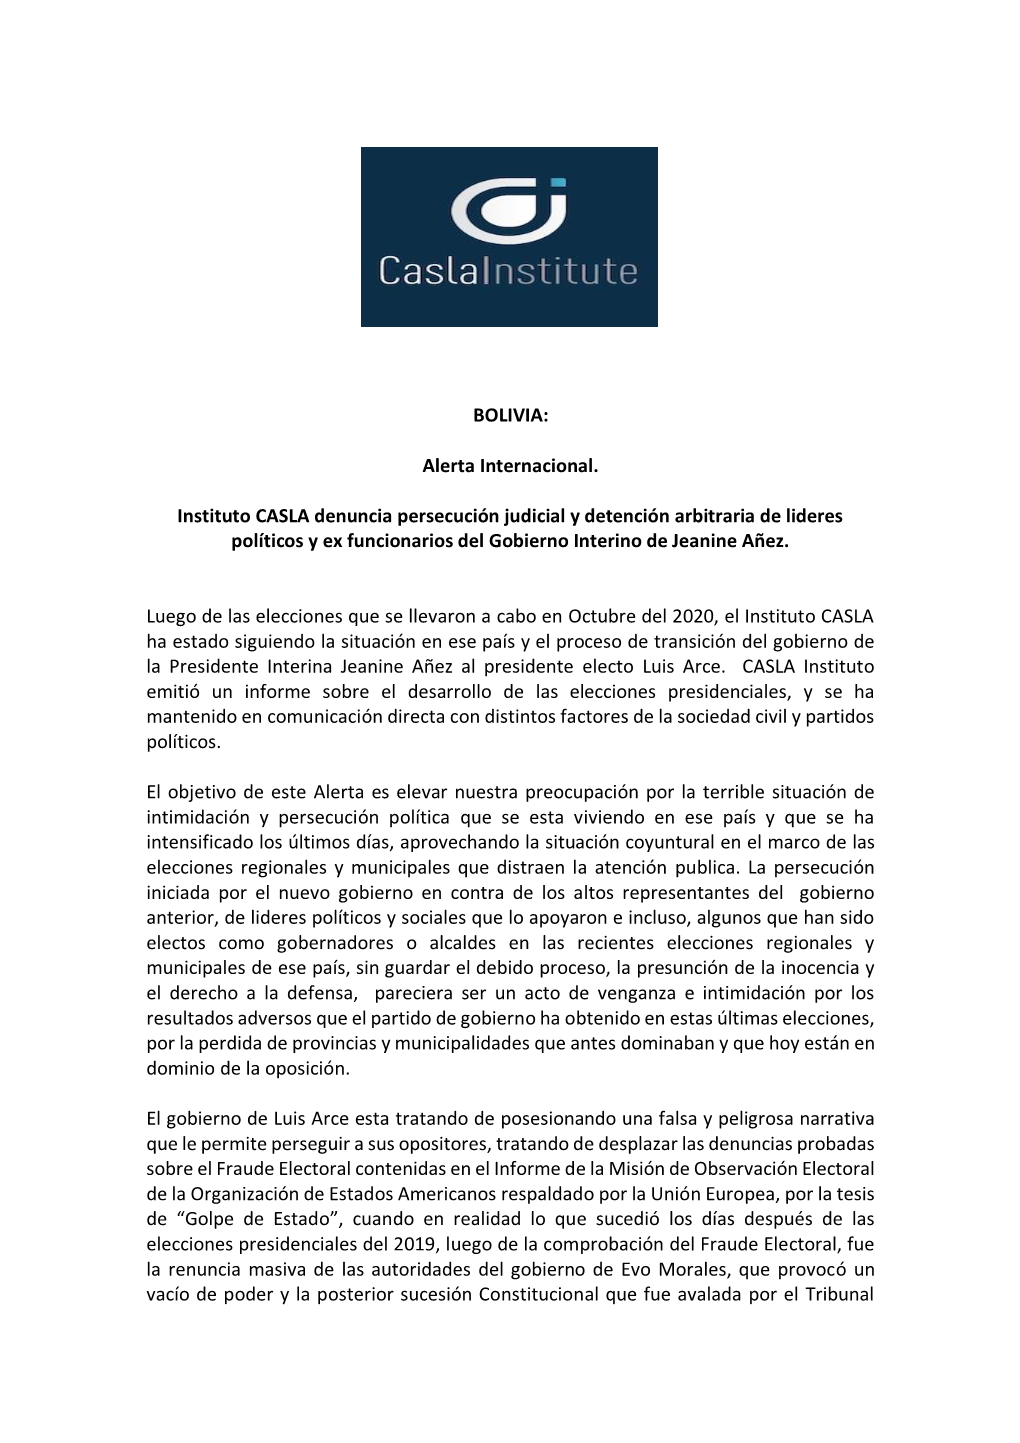 BOLIVIA: Alerta Internacional. Instituto CASLA Denuncia Persecución